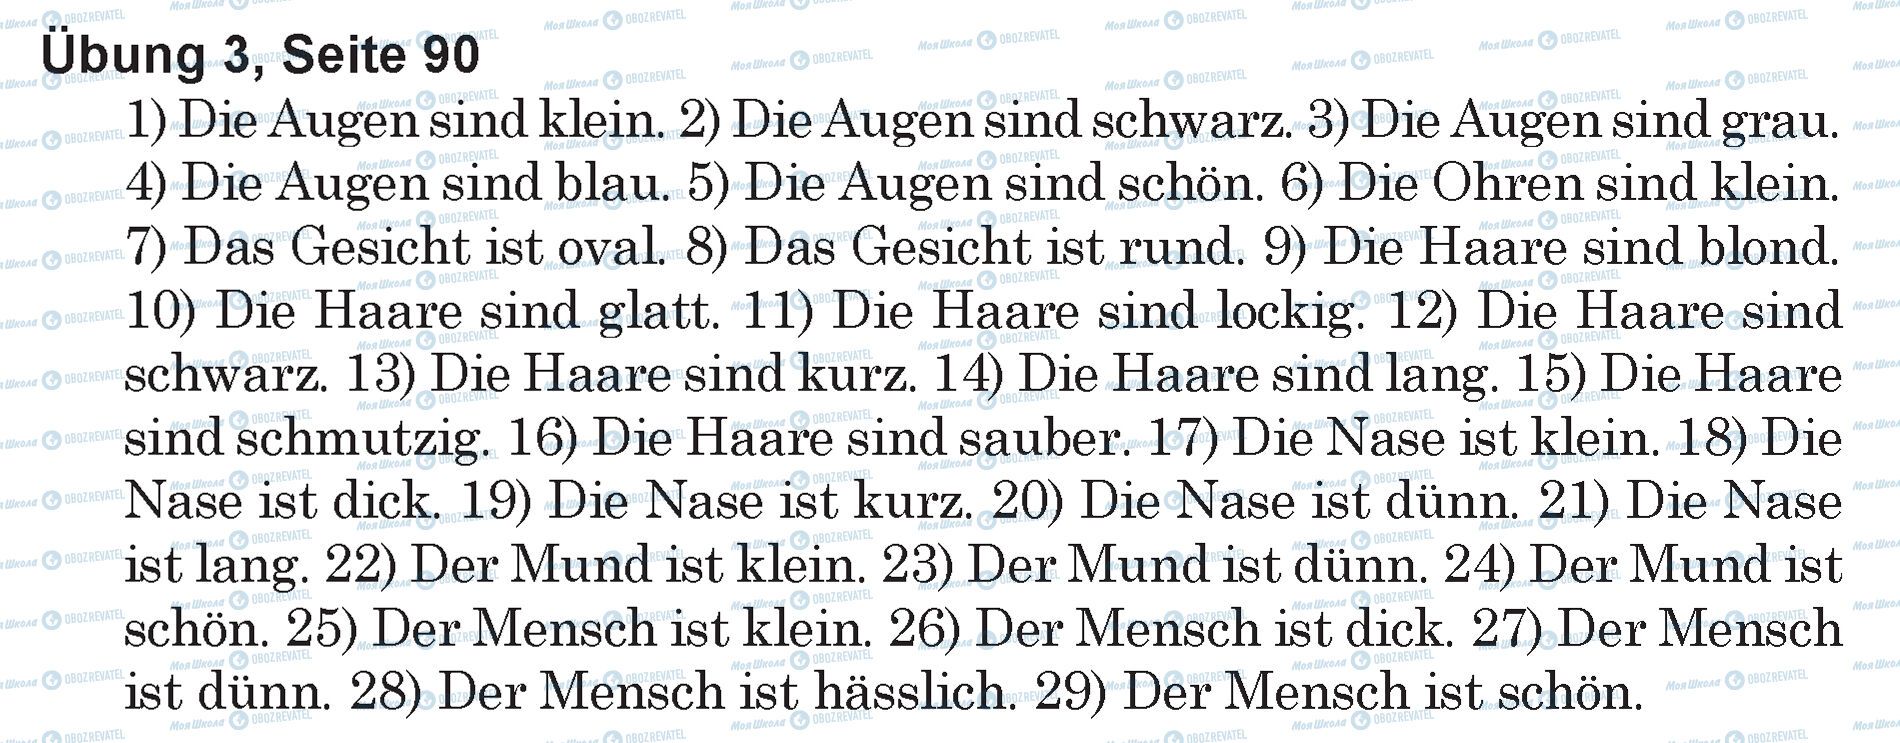 ГДЗ Німецька мова 5 клас сторінка Ubung 3, Seite 90